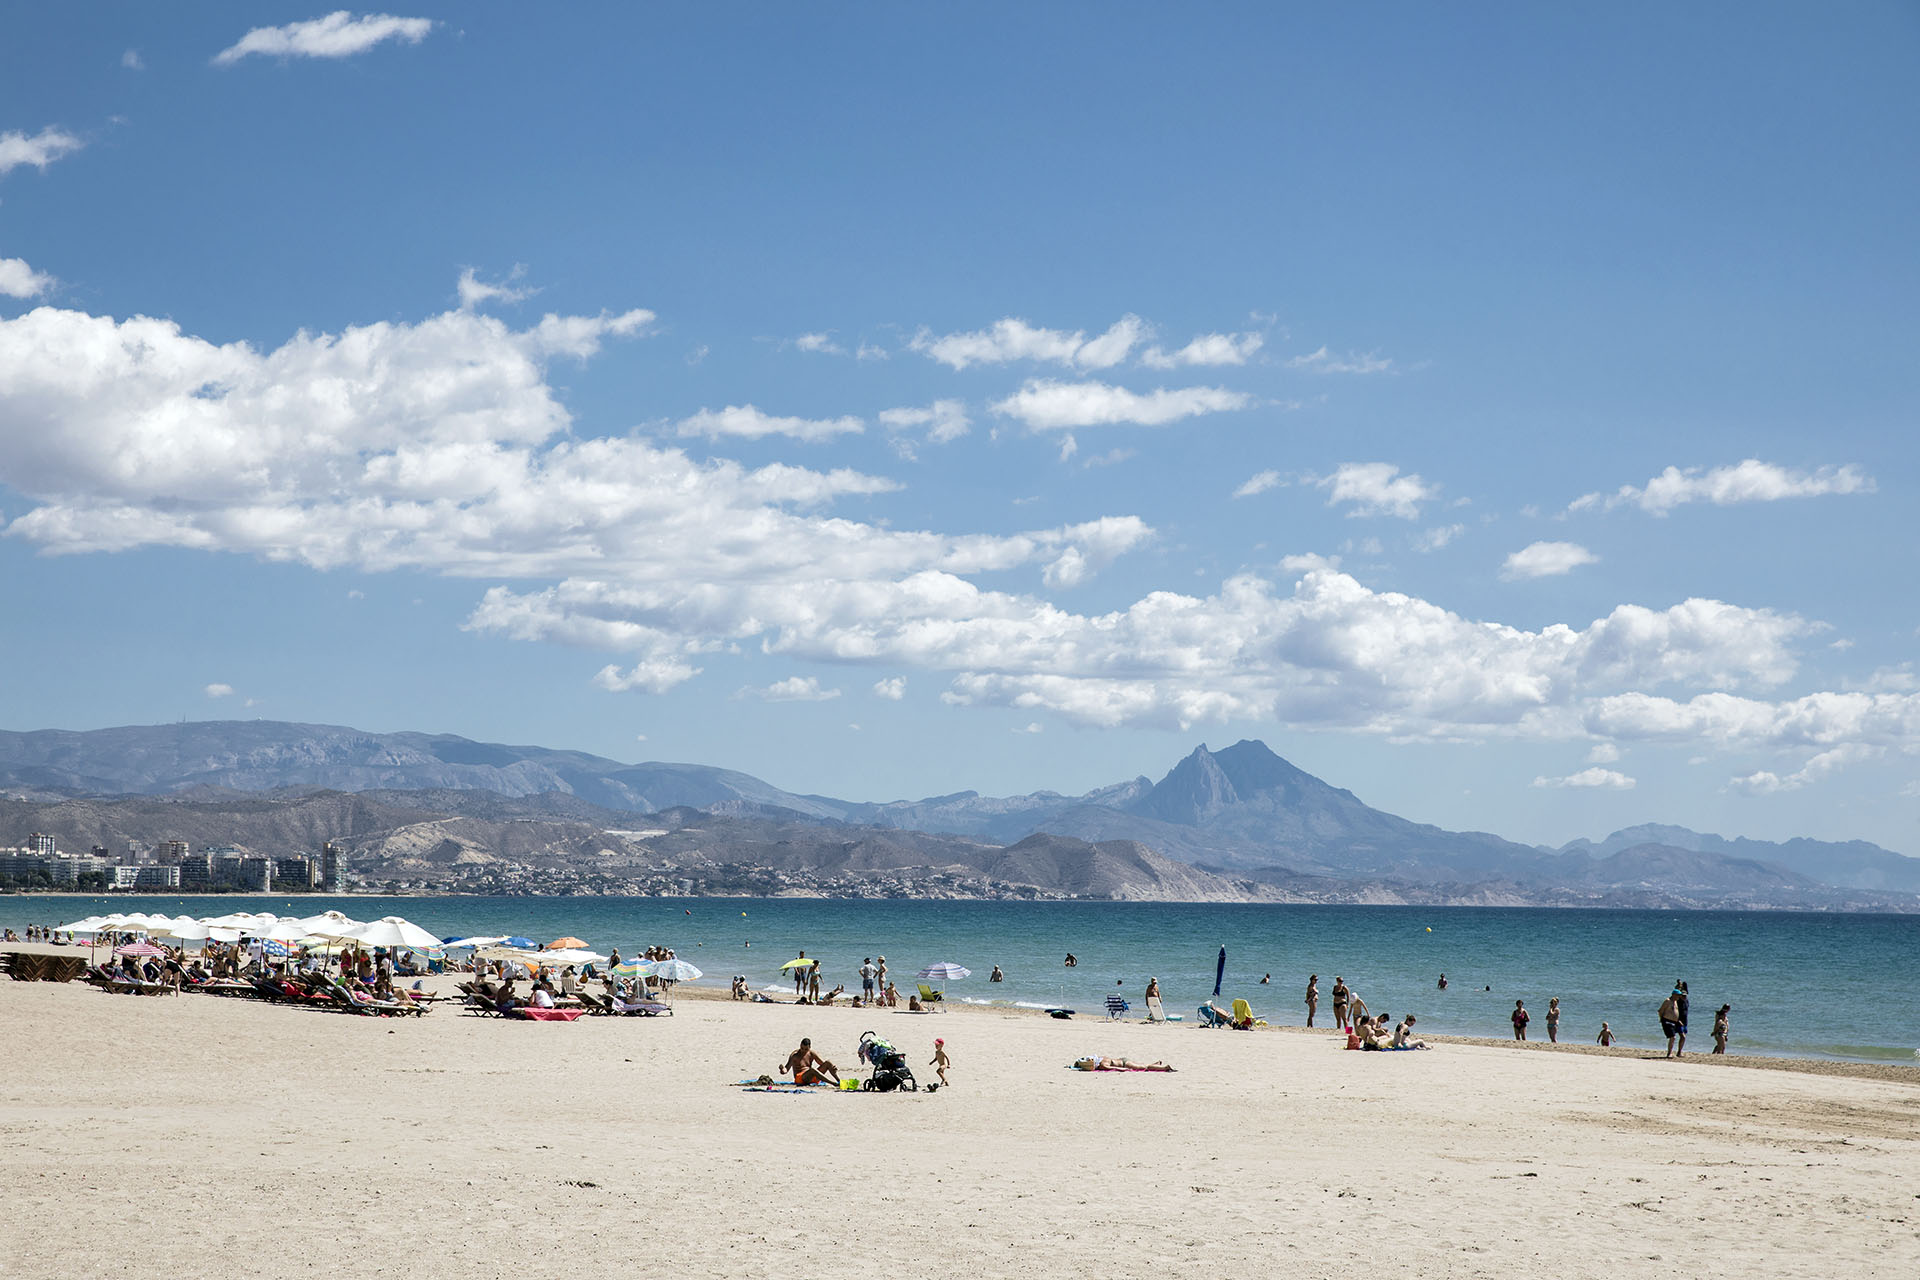 Vacaciones en Alicante con pareja, amigos o en familia. ¡Tú decides!